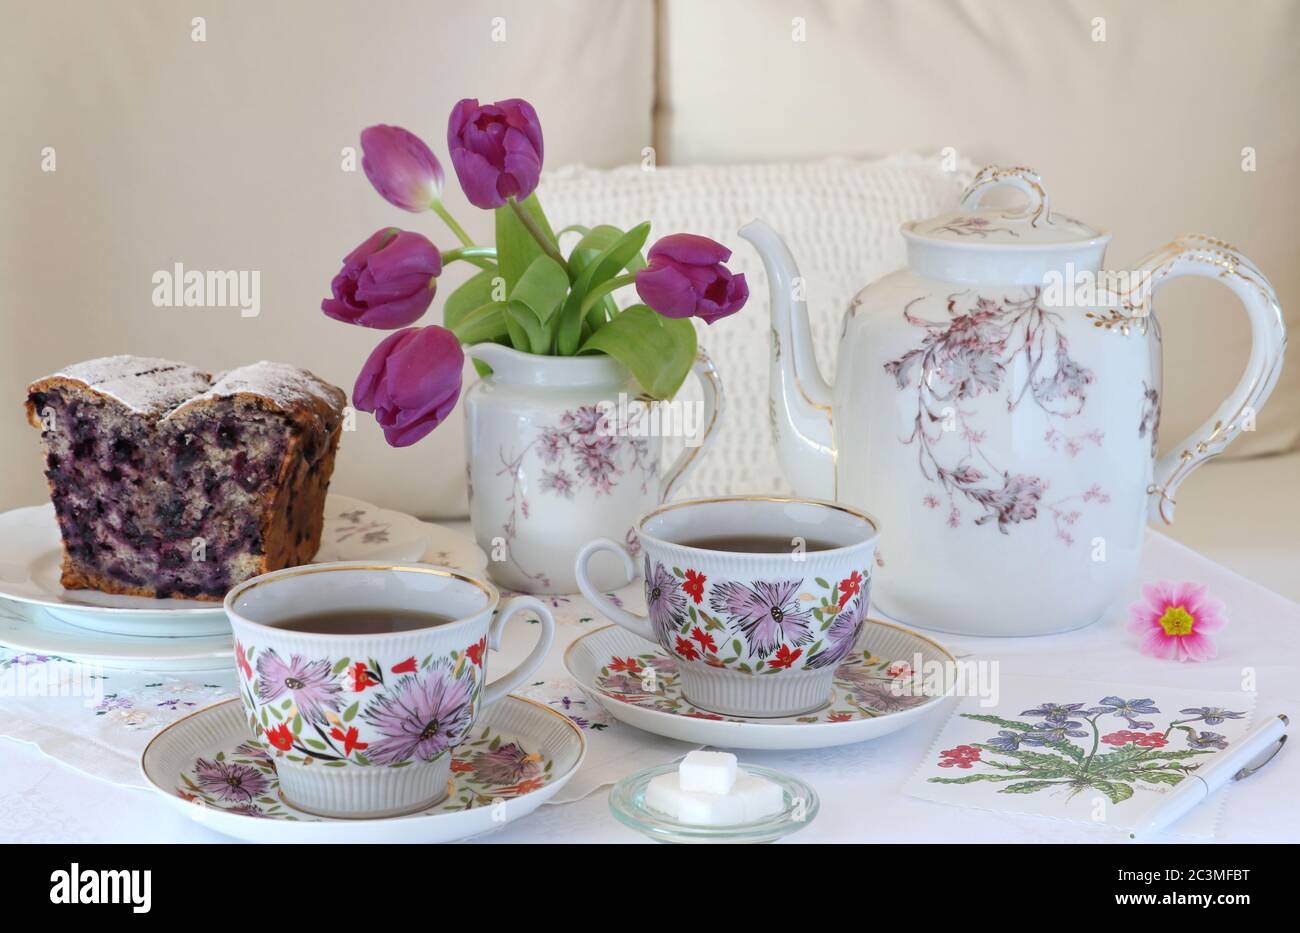 Tischdekoration mit Vintage Porzellan, Blumenstrauß und Blaubeerkuchen Stockfoto